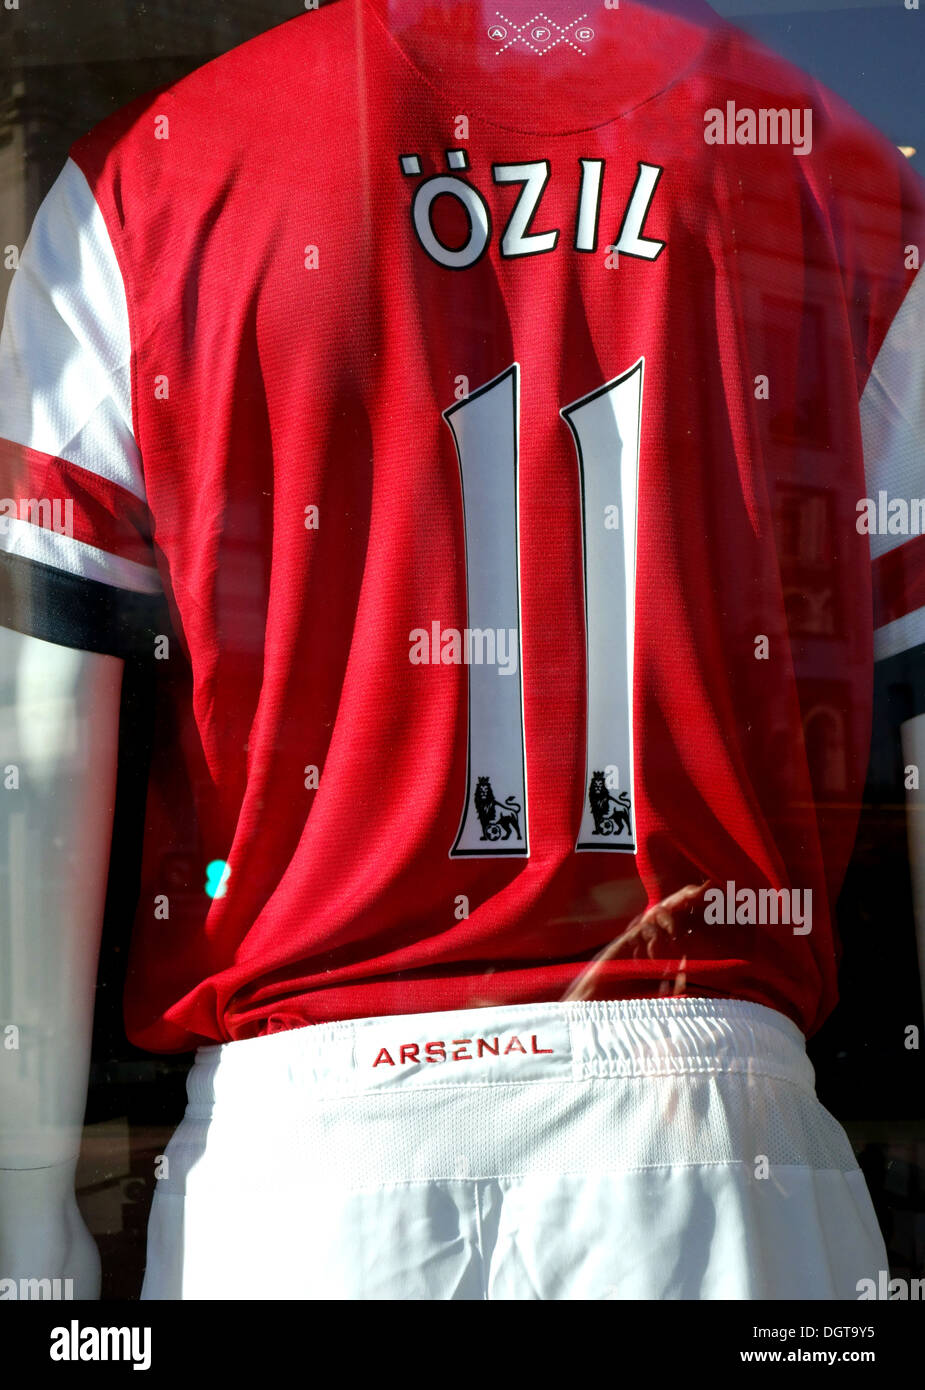 Mesut Ozil Replica Trikot In London Arsenal F C Anhanger Shop Stockfotografie Alamy